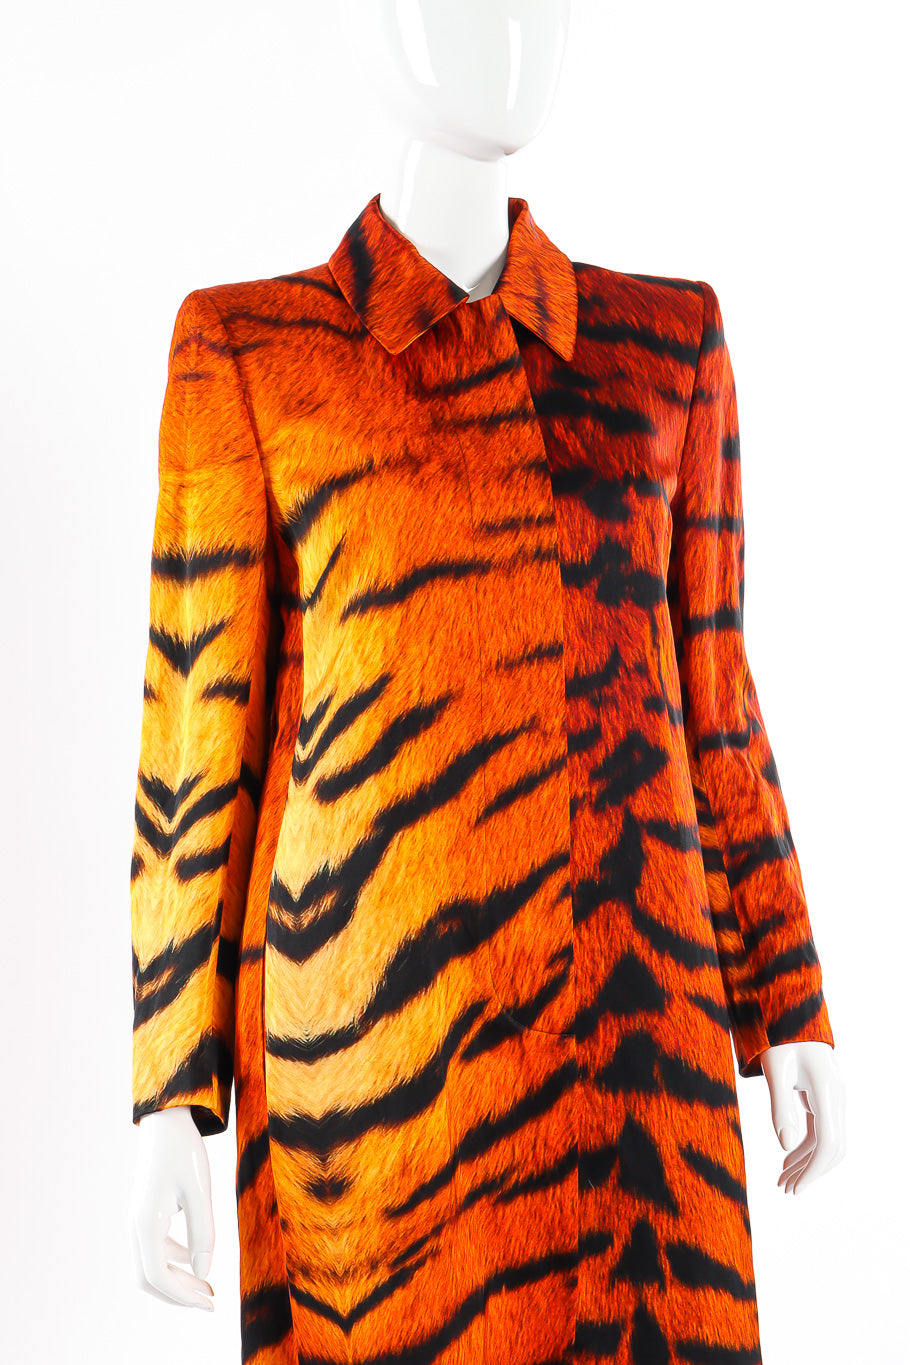 Dries Van Noten tiger duster coat on mannequin @recessla